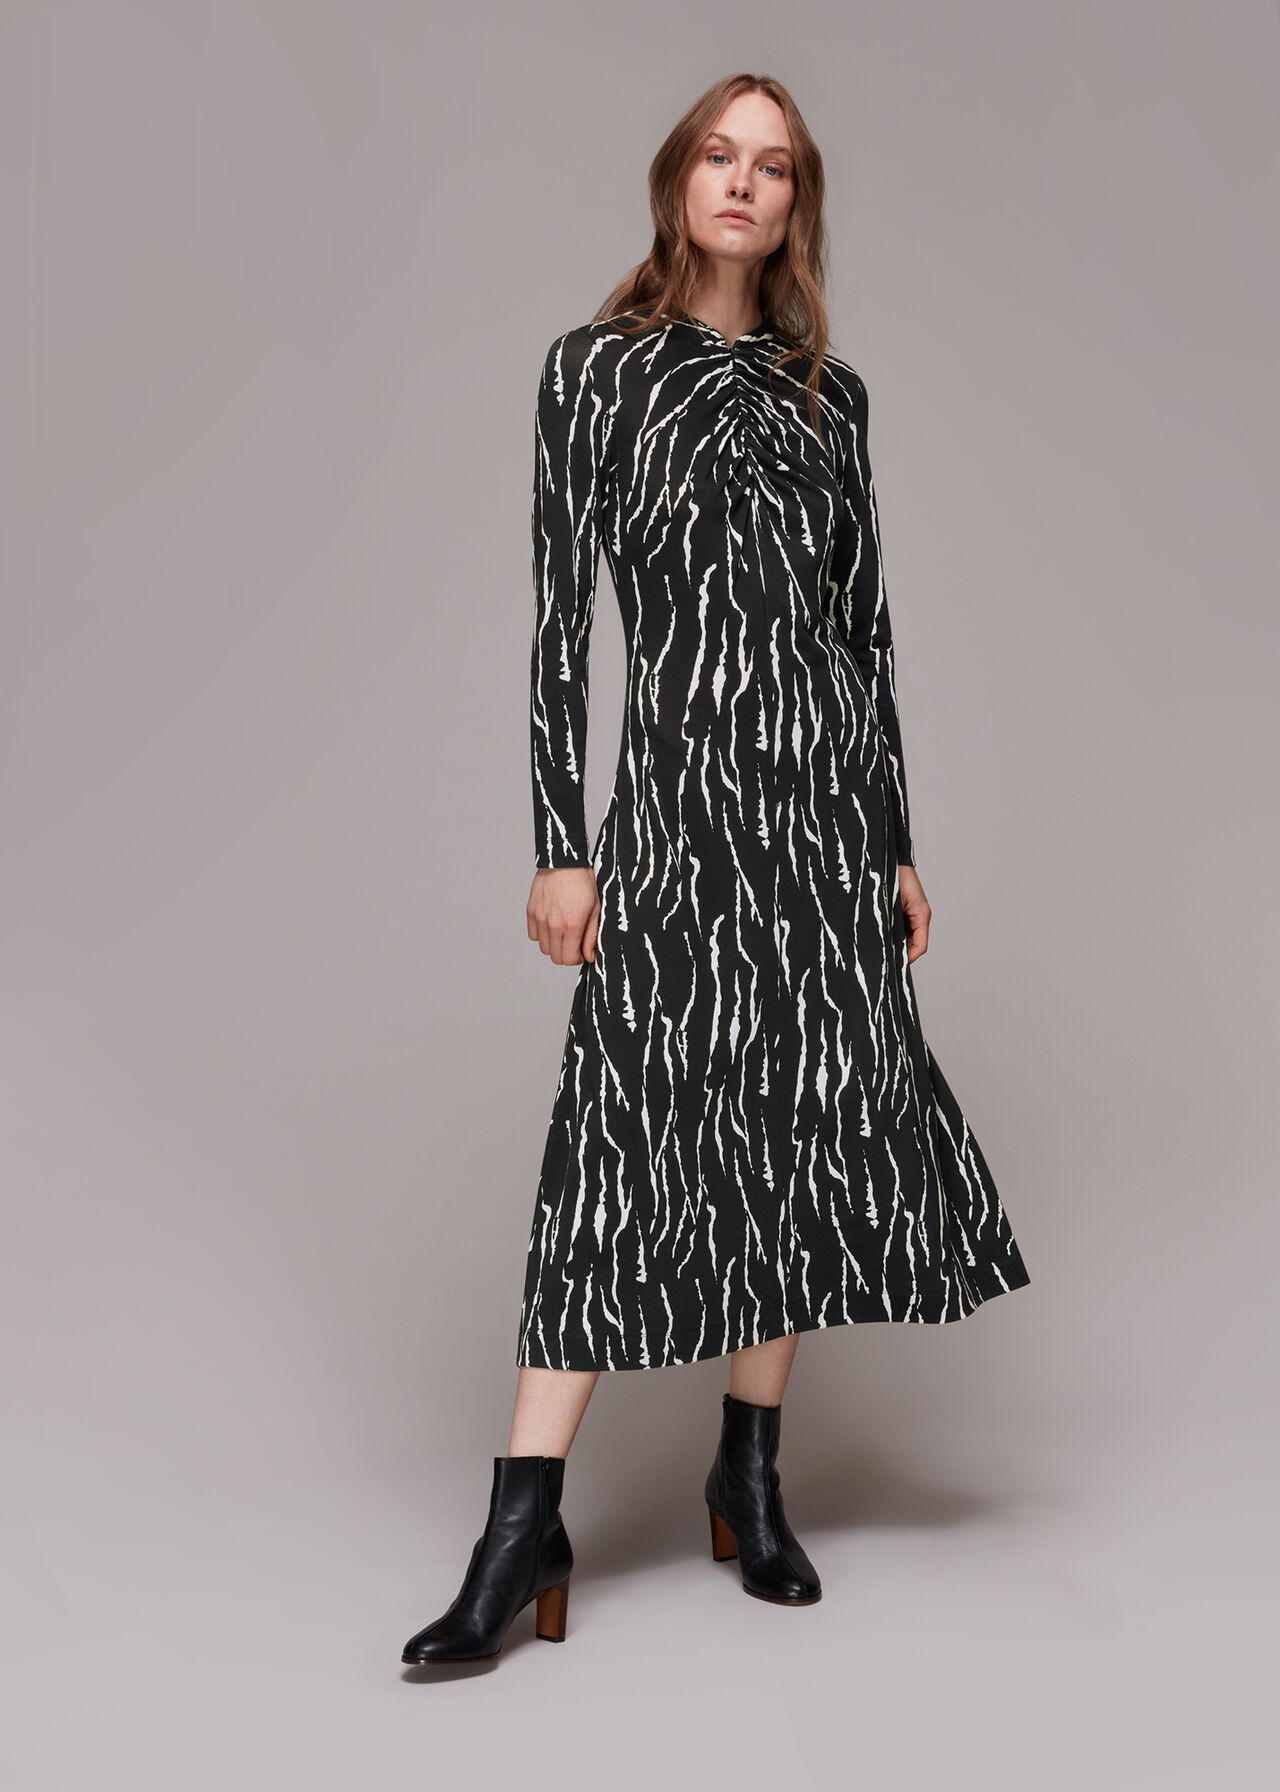 Rumi Tiger Print Jersey Dress